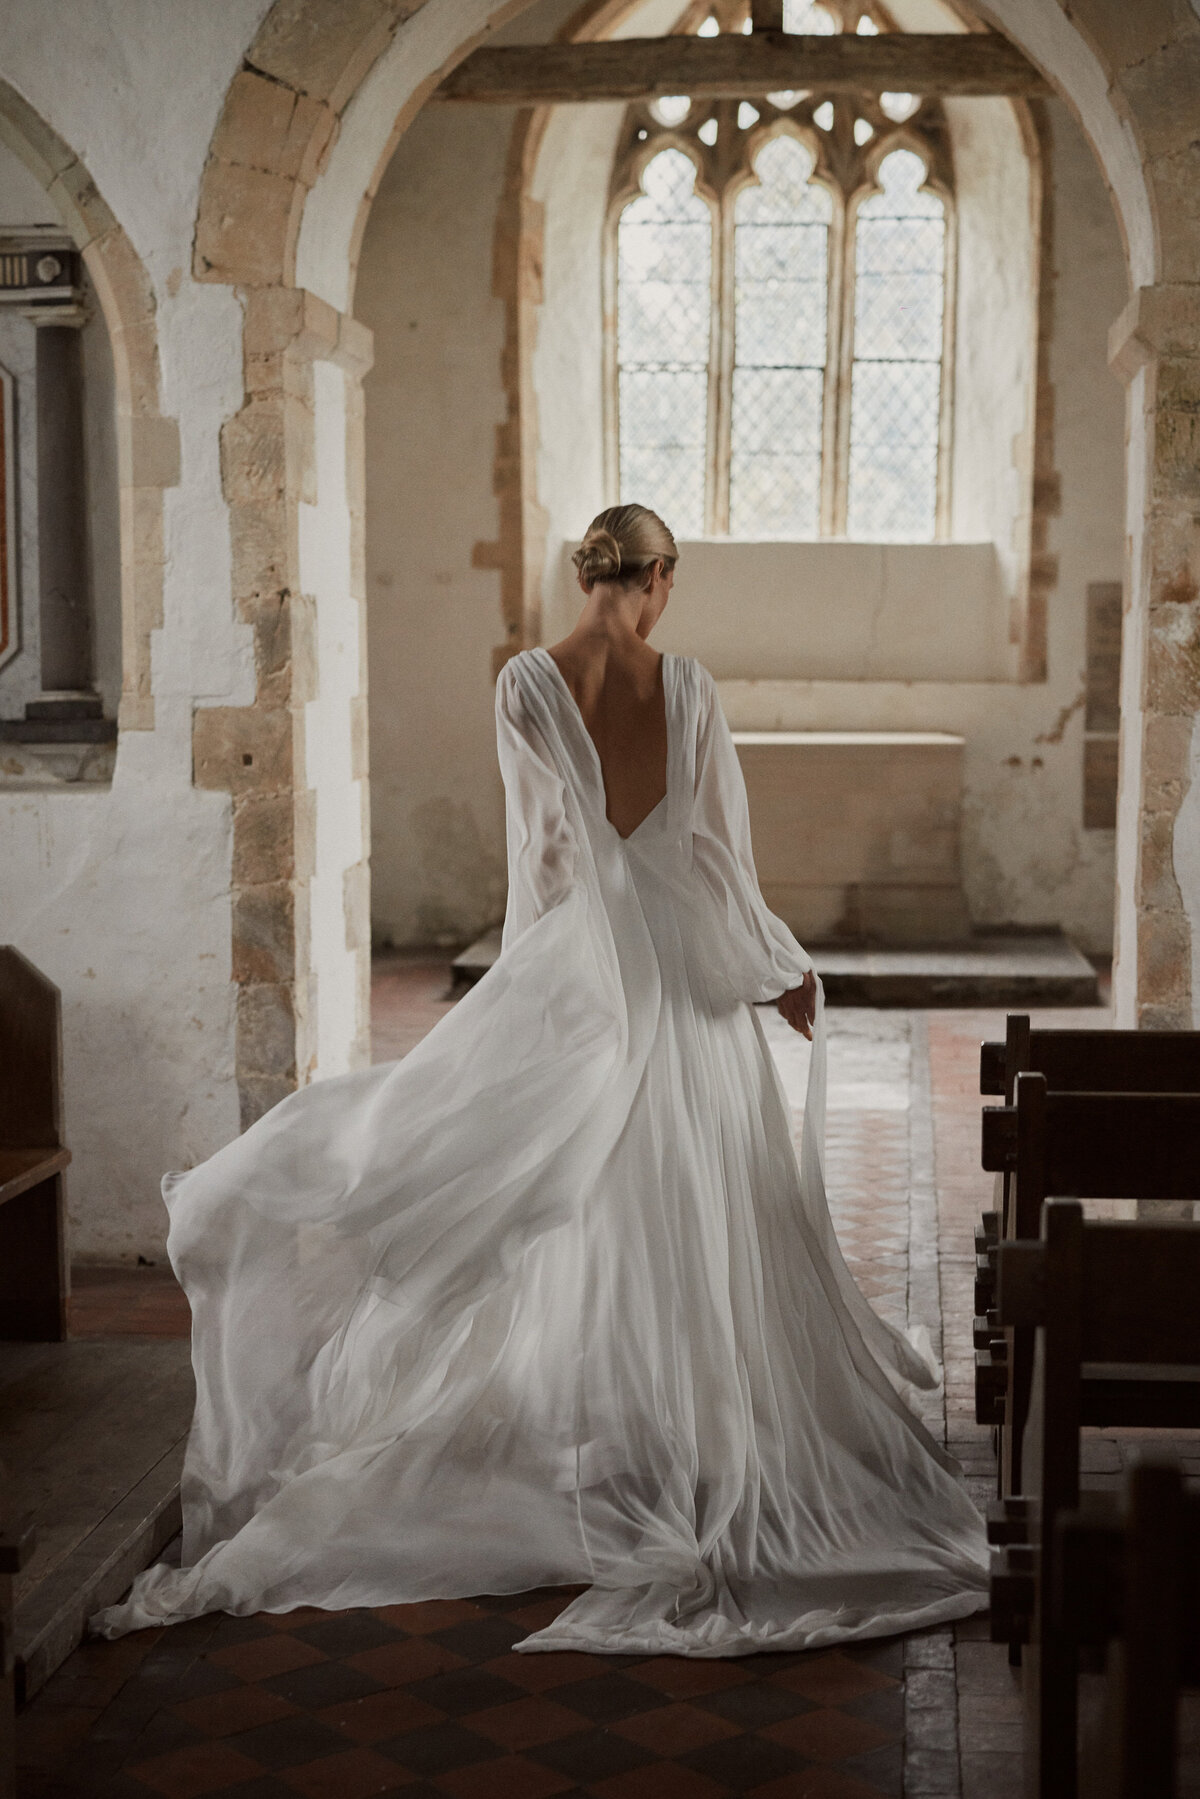 Georgette silk wedding dress by british bridal designer worn by bride in chapel